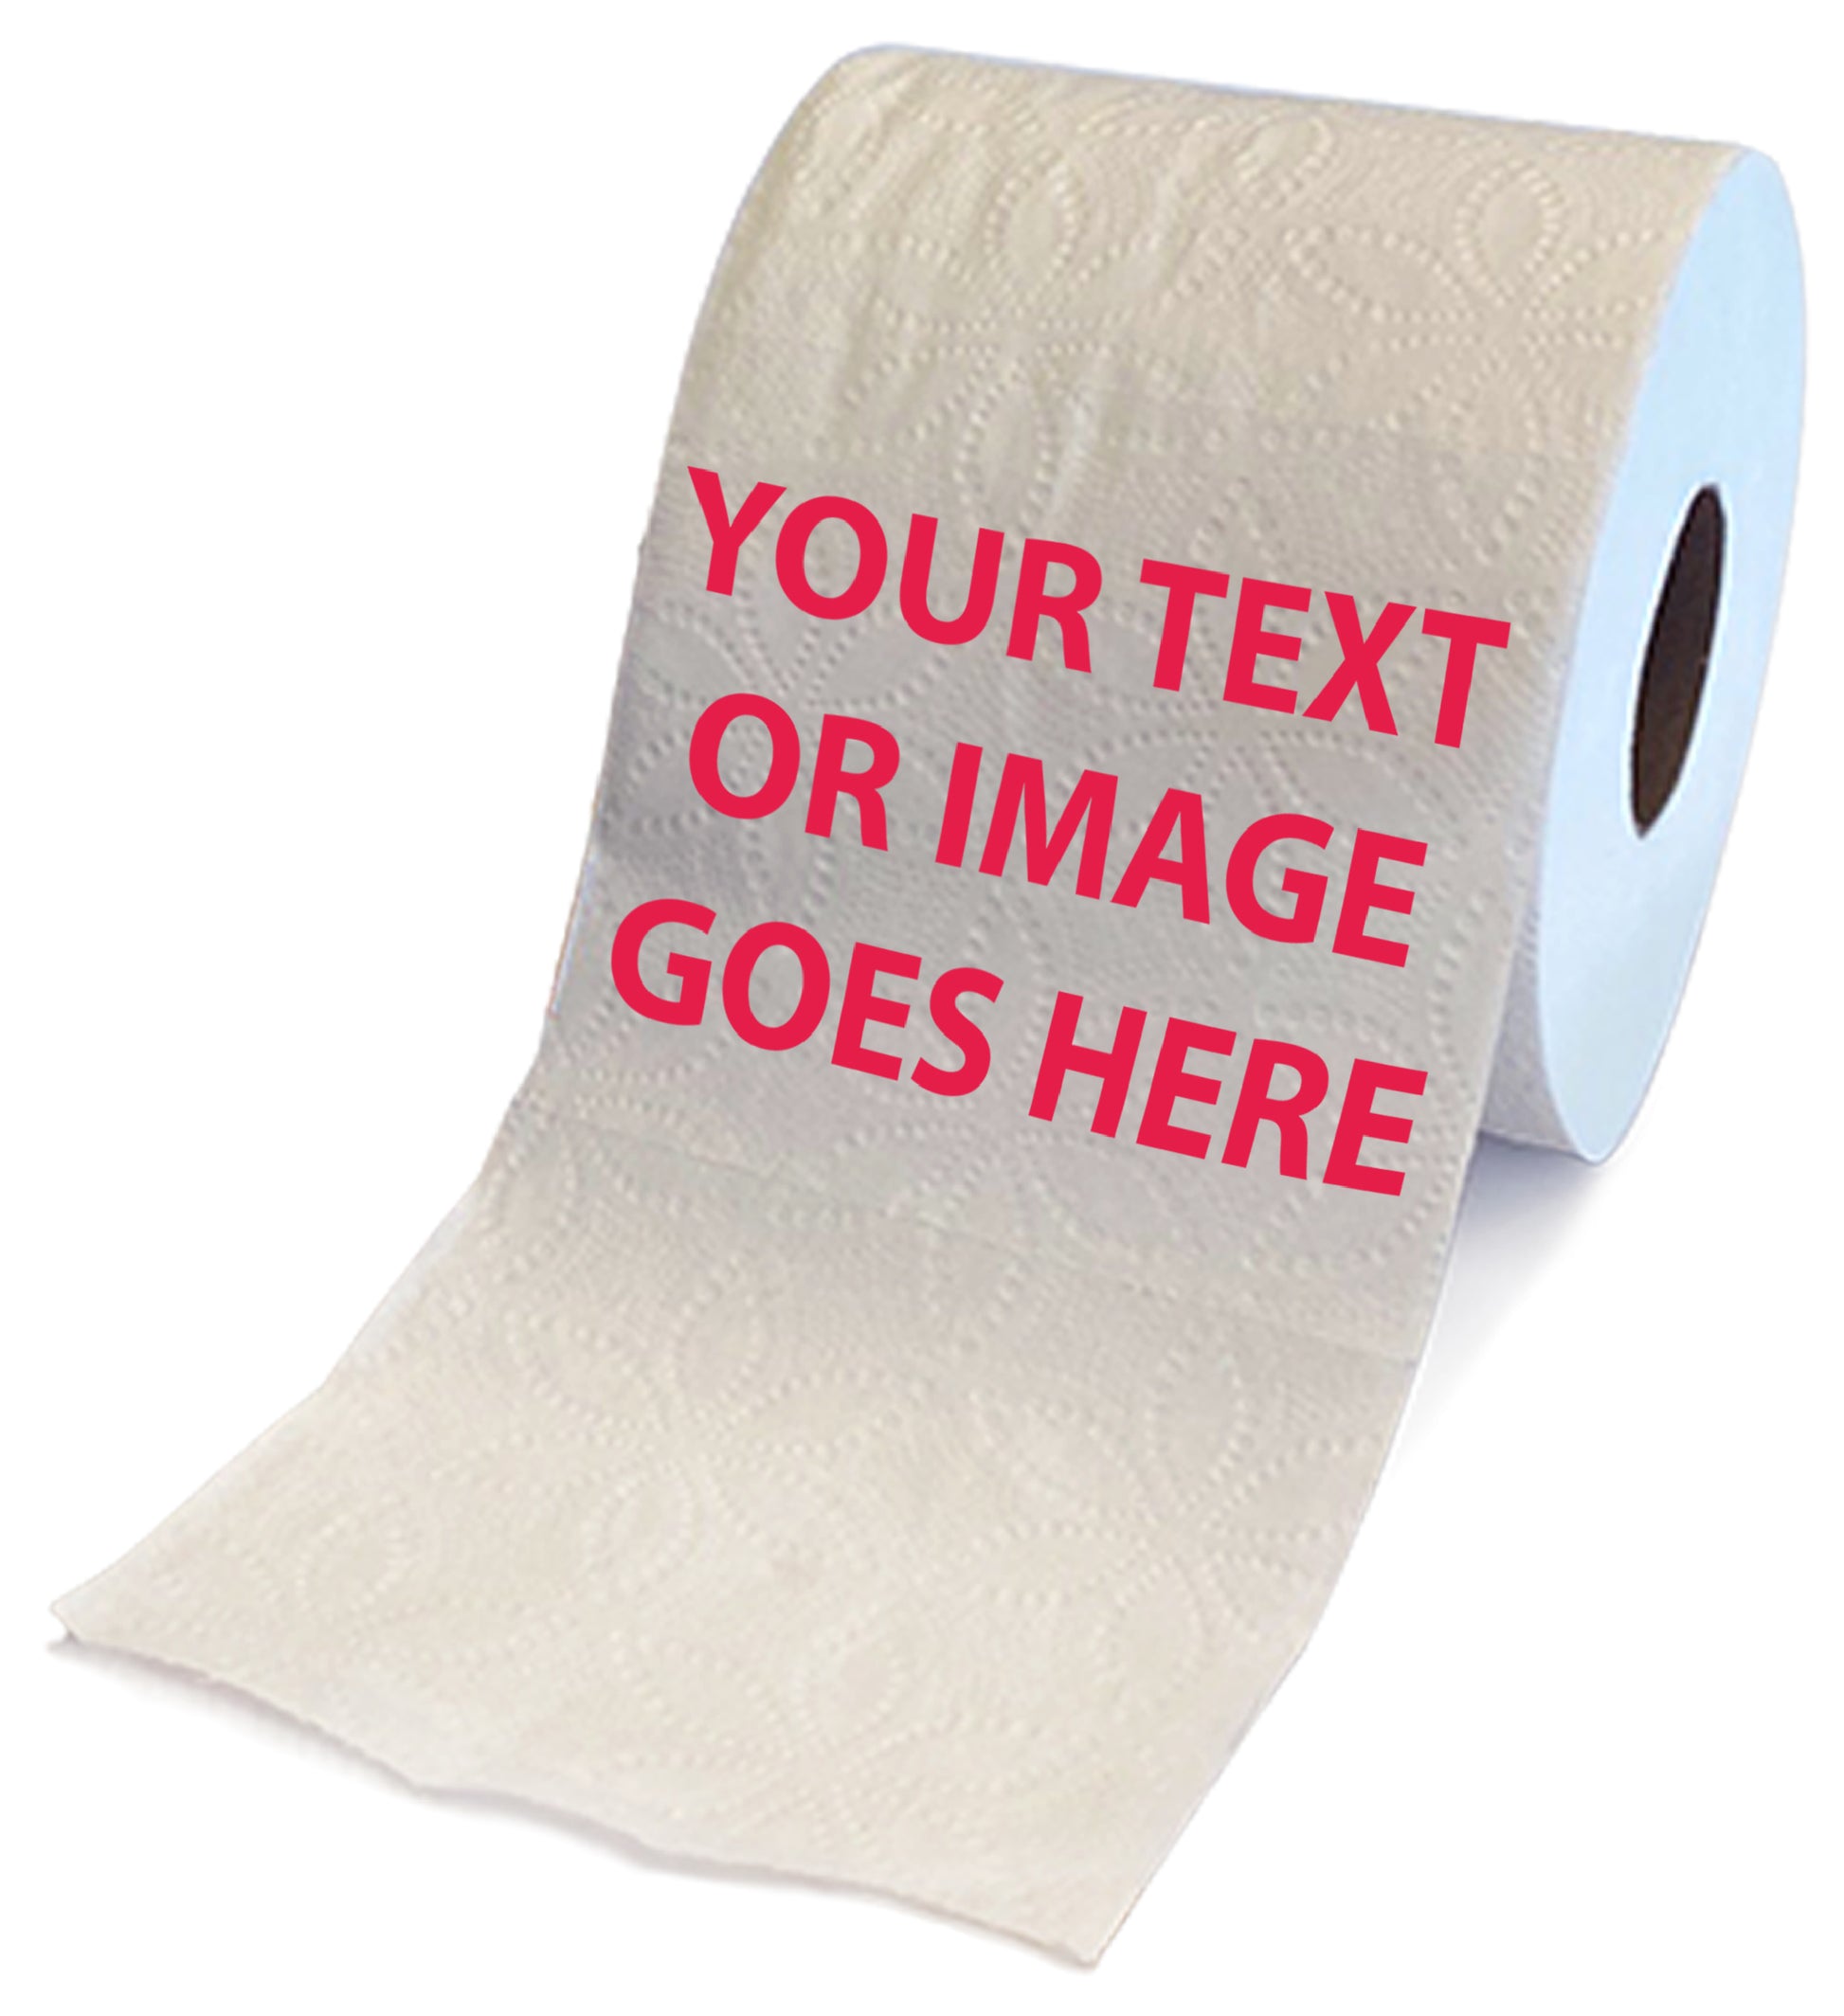 Custom Printed Tissue Paper